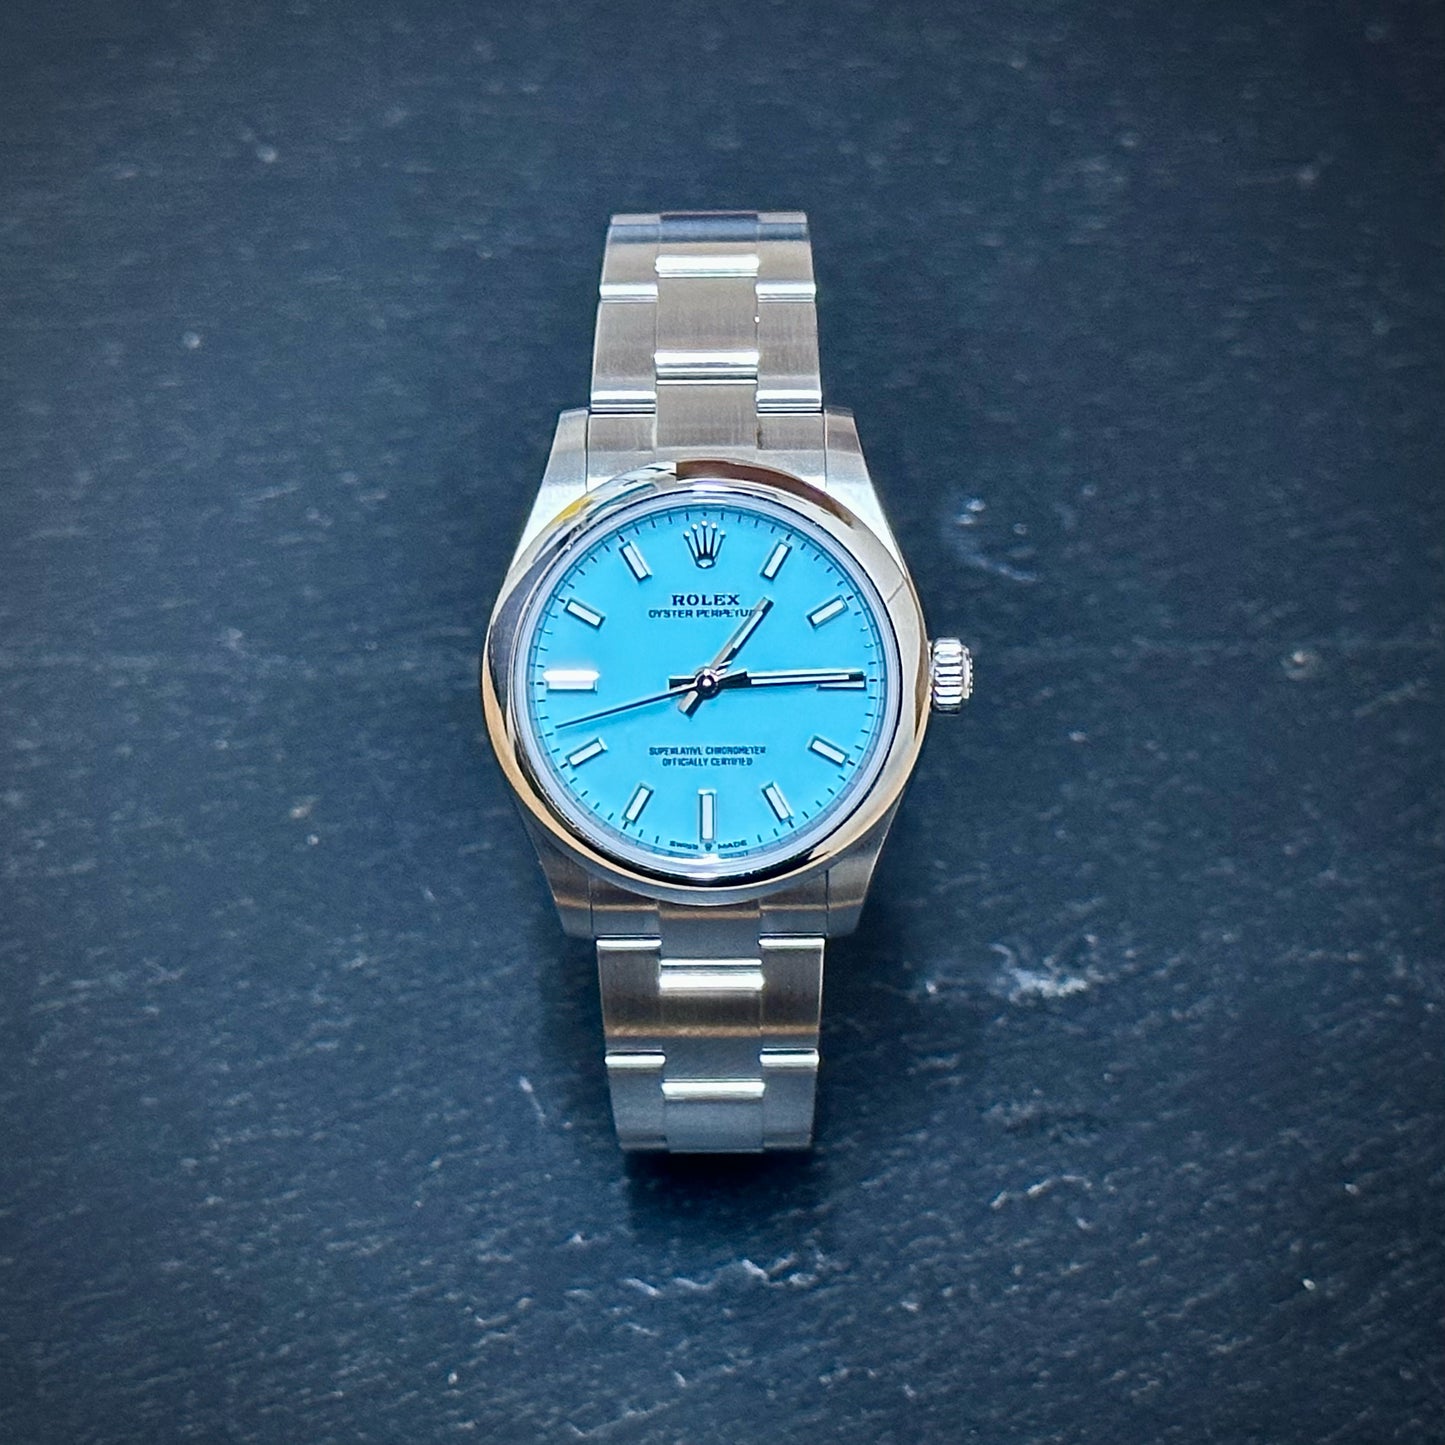 Pre-Owned: Unworn stainless steel Rolex 31mm 277200 'Tiffany' bracelet watch.